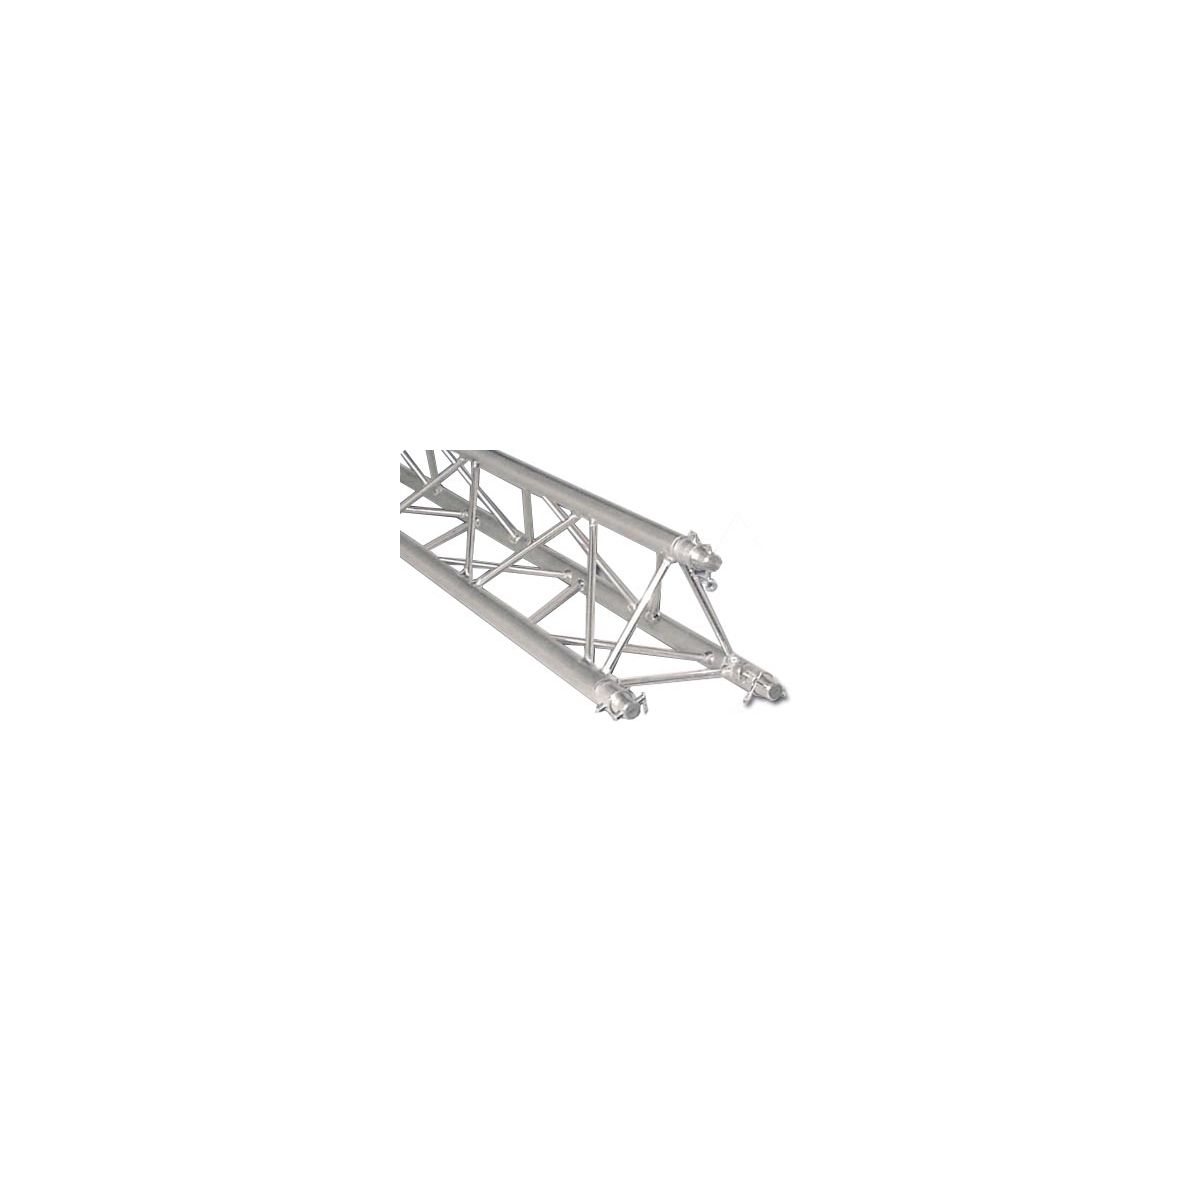 Structures aluminium - Mobiltruss - TRIO DECO 30102